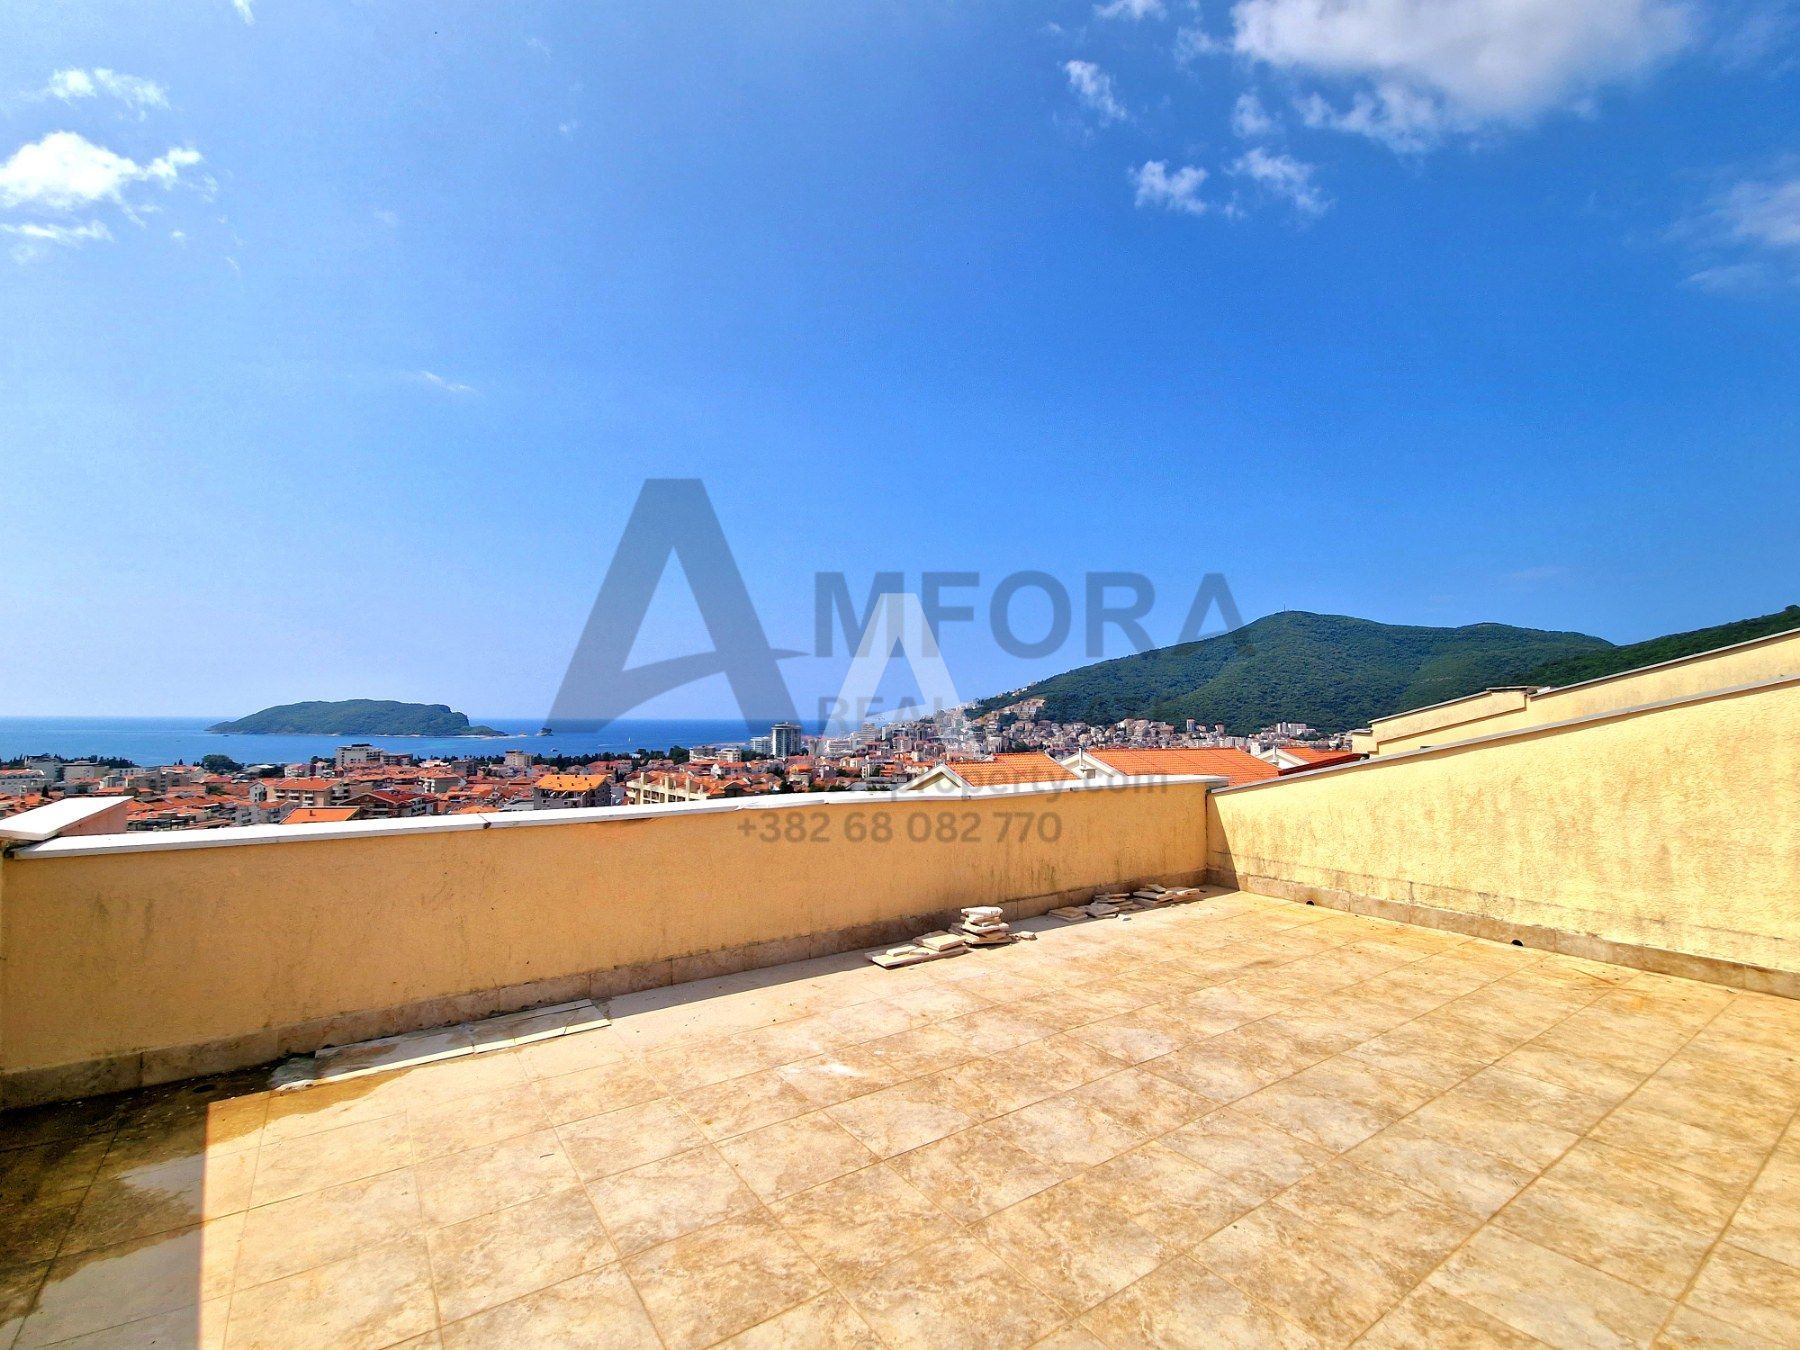 amforaproperty.com/Petosoban namesten stan 160m2 sa panoramskim pogledom na more i grad, Lazi - Budva (Mogućnost plaćanja u rate)